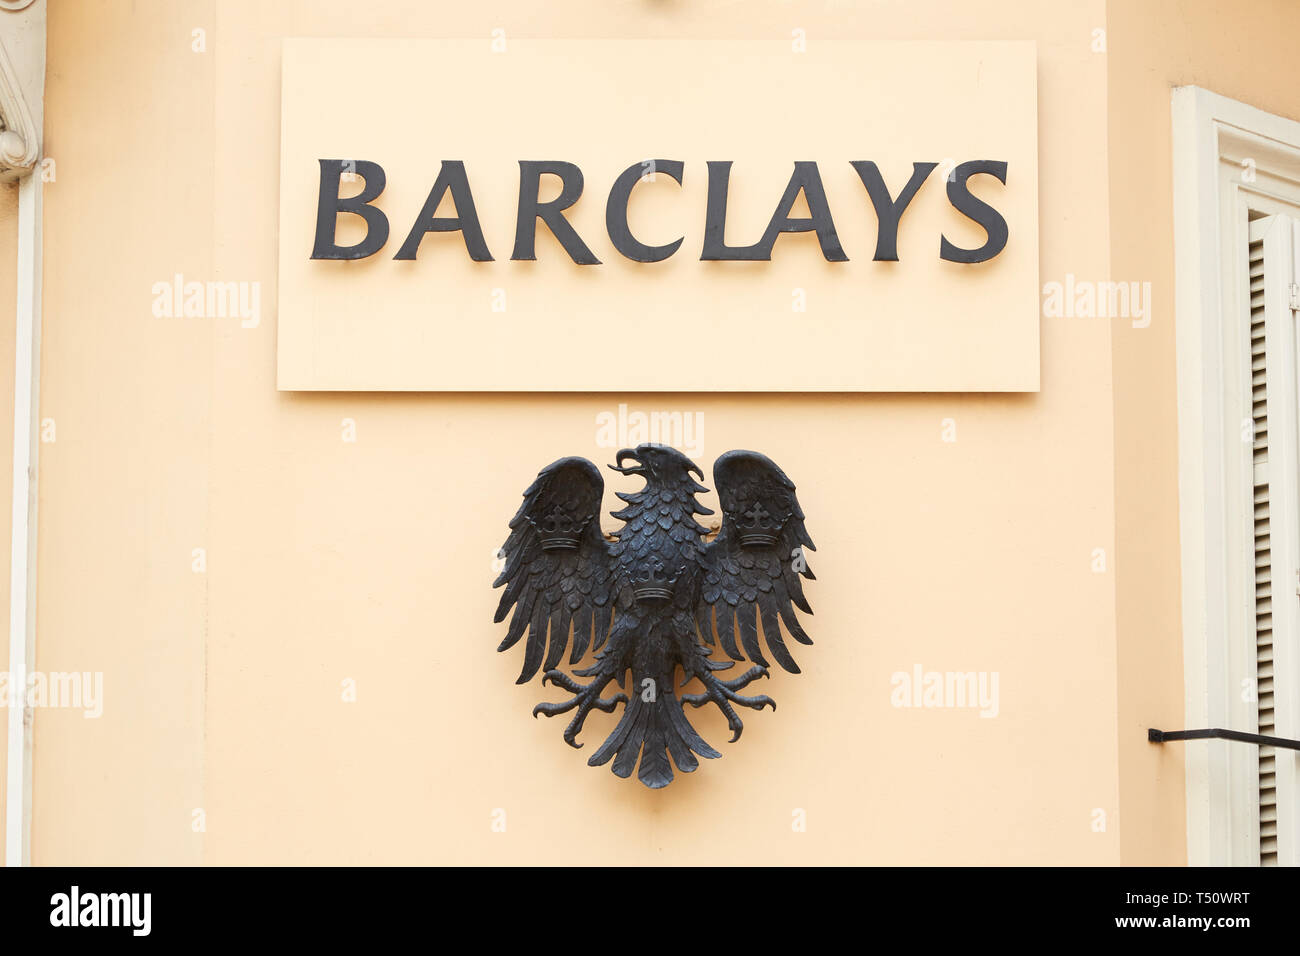 MONTE CARLO, MONACO - le 19 août 2016 : signe de la Barclays Bank et eagle logo métal à Monte Carlo, Monaco. Banque D'Images